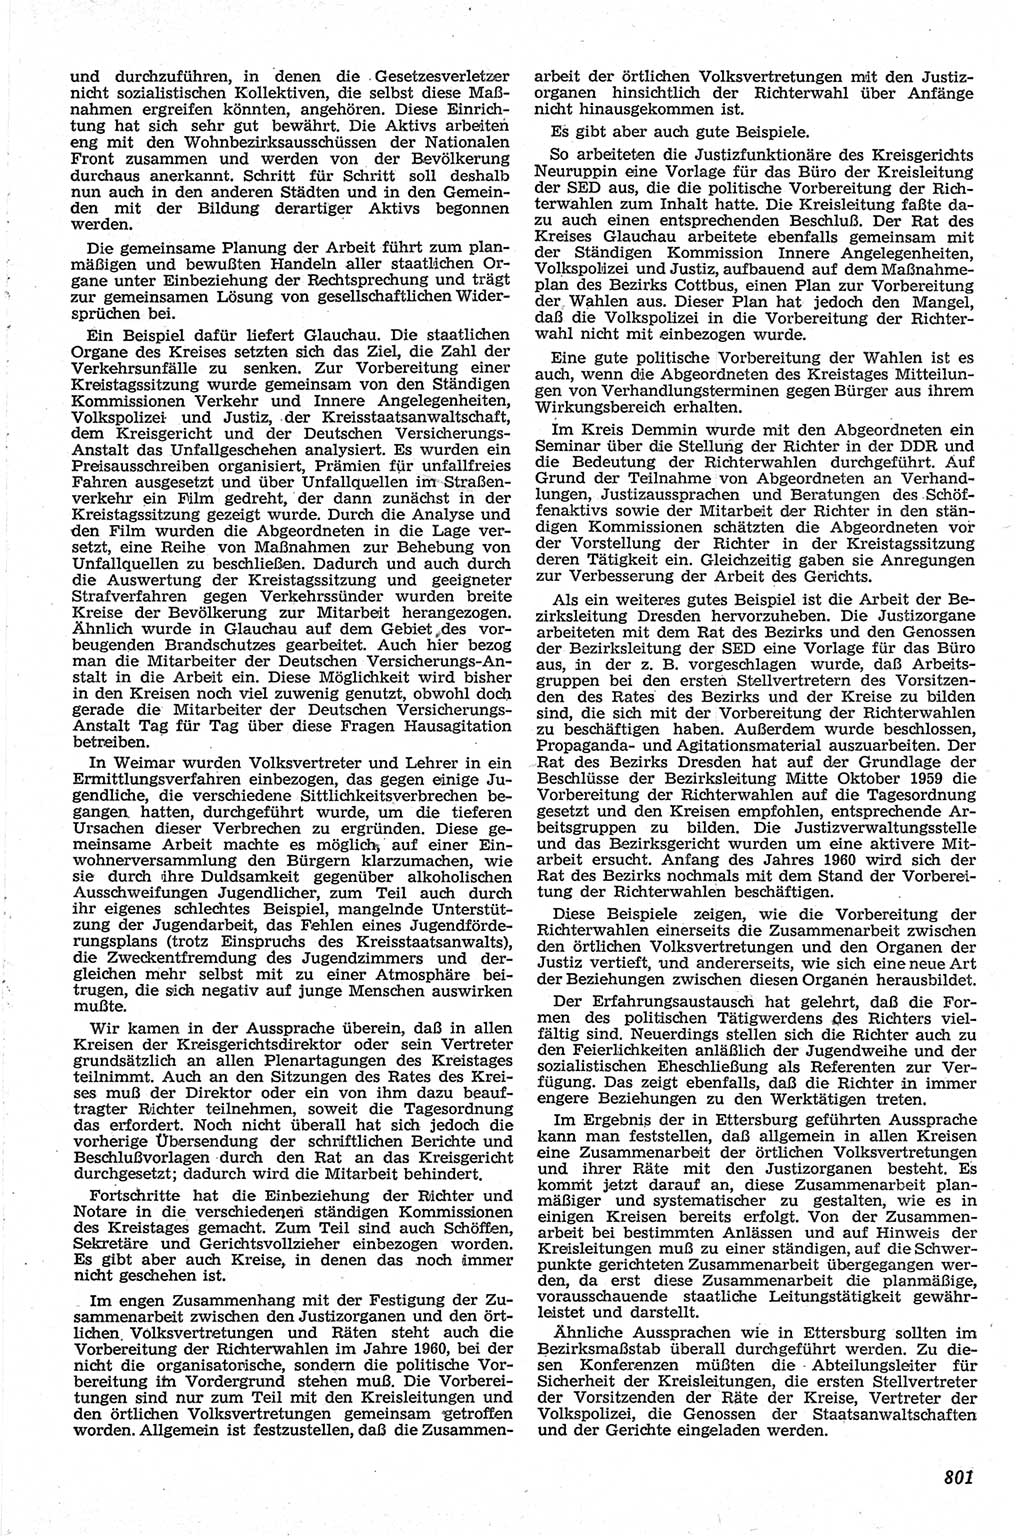 Neue Justiz (NJ), Zeitschrift für Recht und Rechtswissenschaft [Deutsche Demokratische Republik (DDR)], 13. Jahrgang 1959, Seite 801 (NJ DDR 1959, S. 801)